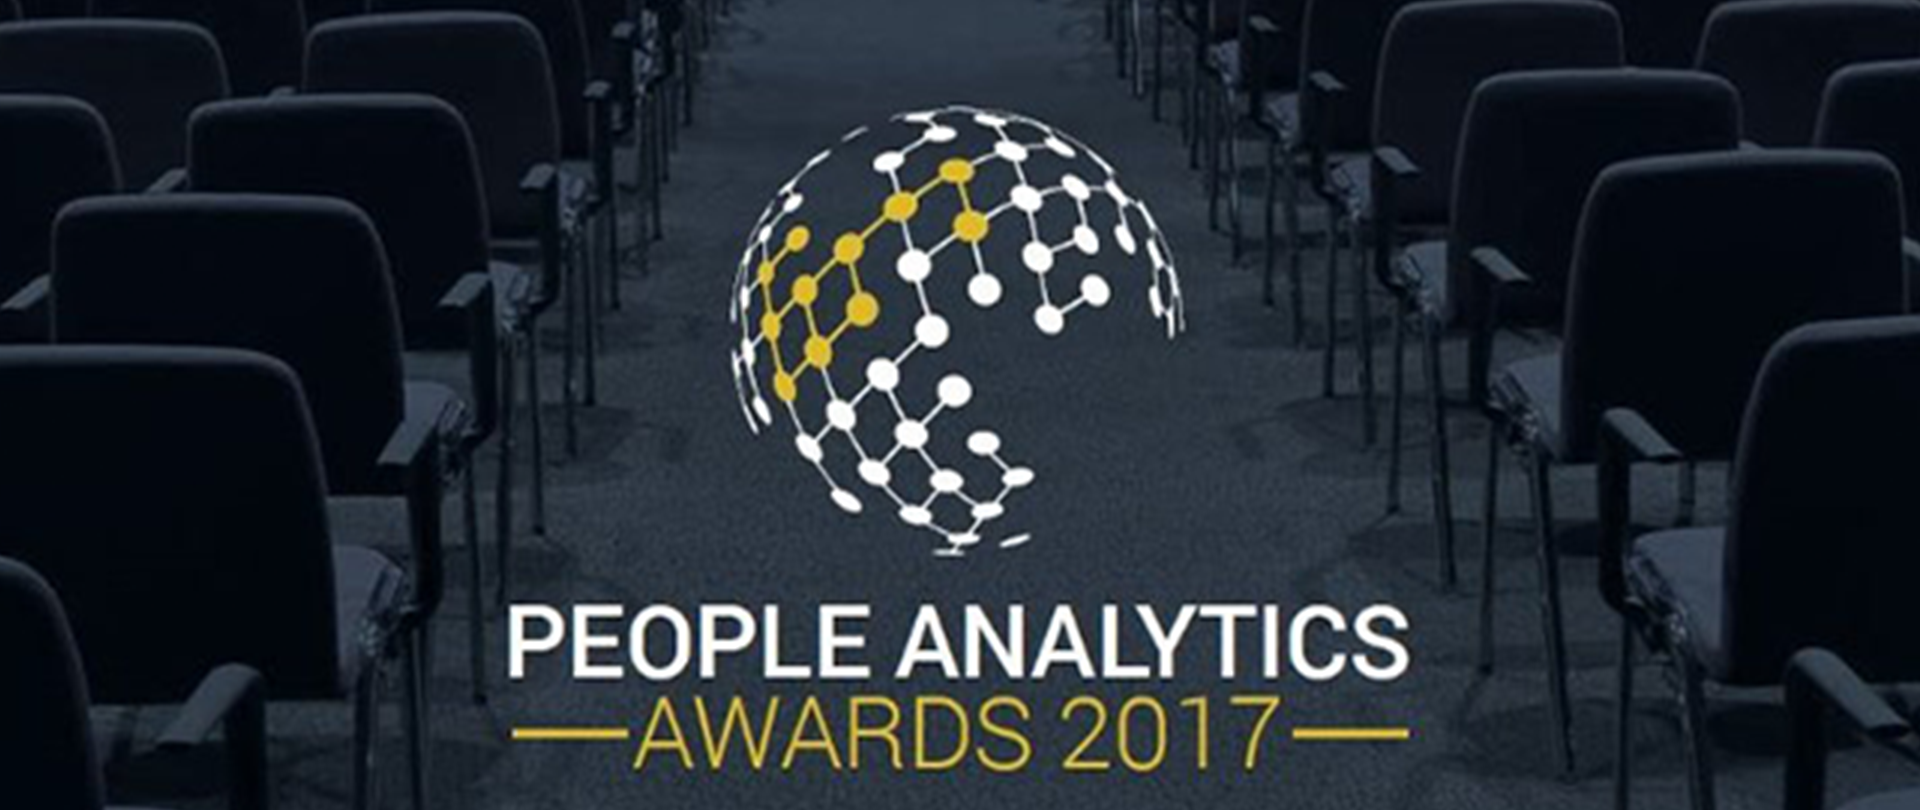 MetrixAnalytics people analytics award